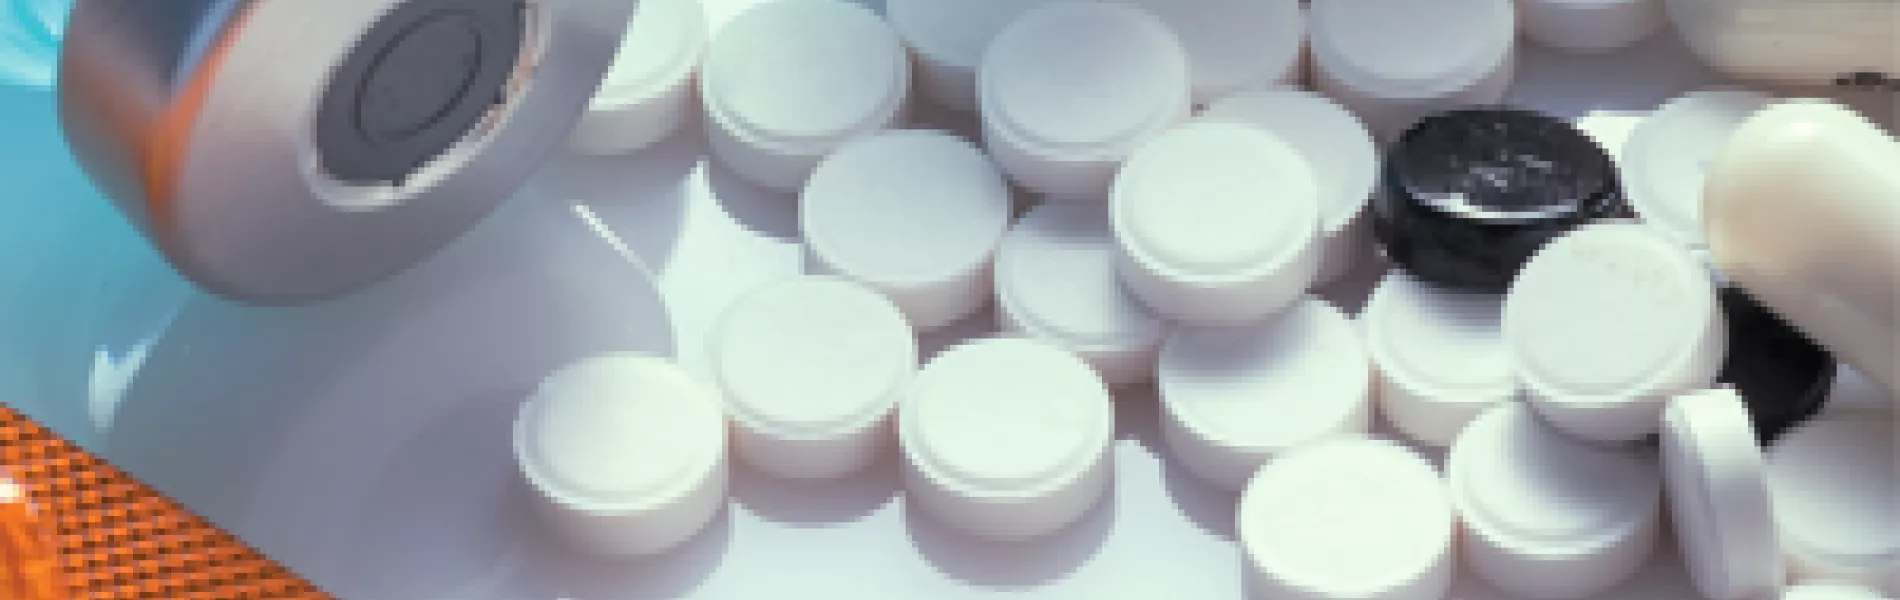 Clinical Trials Pills